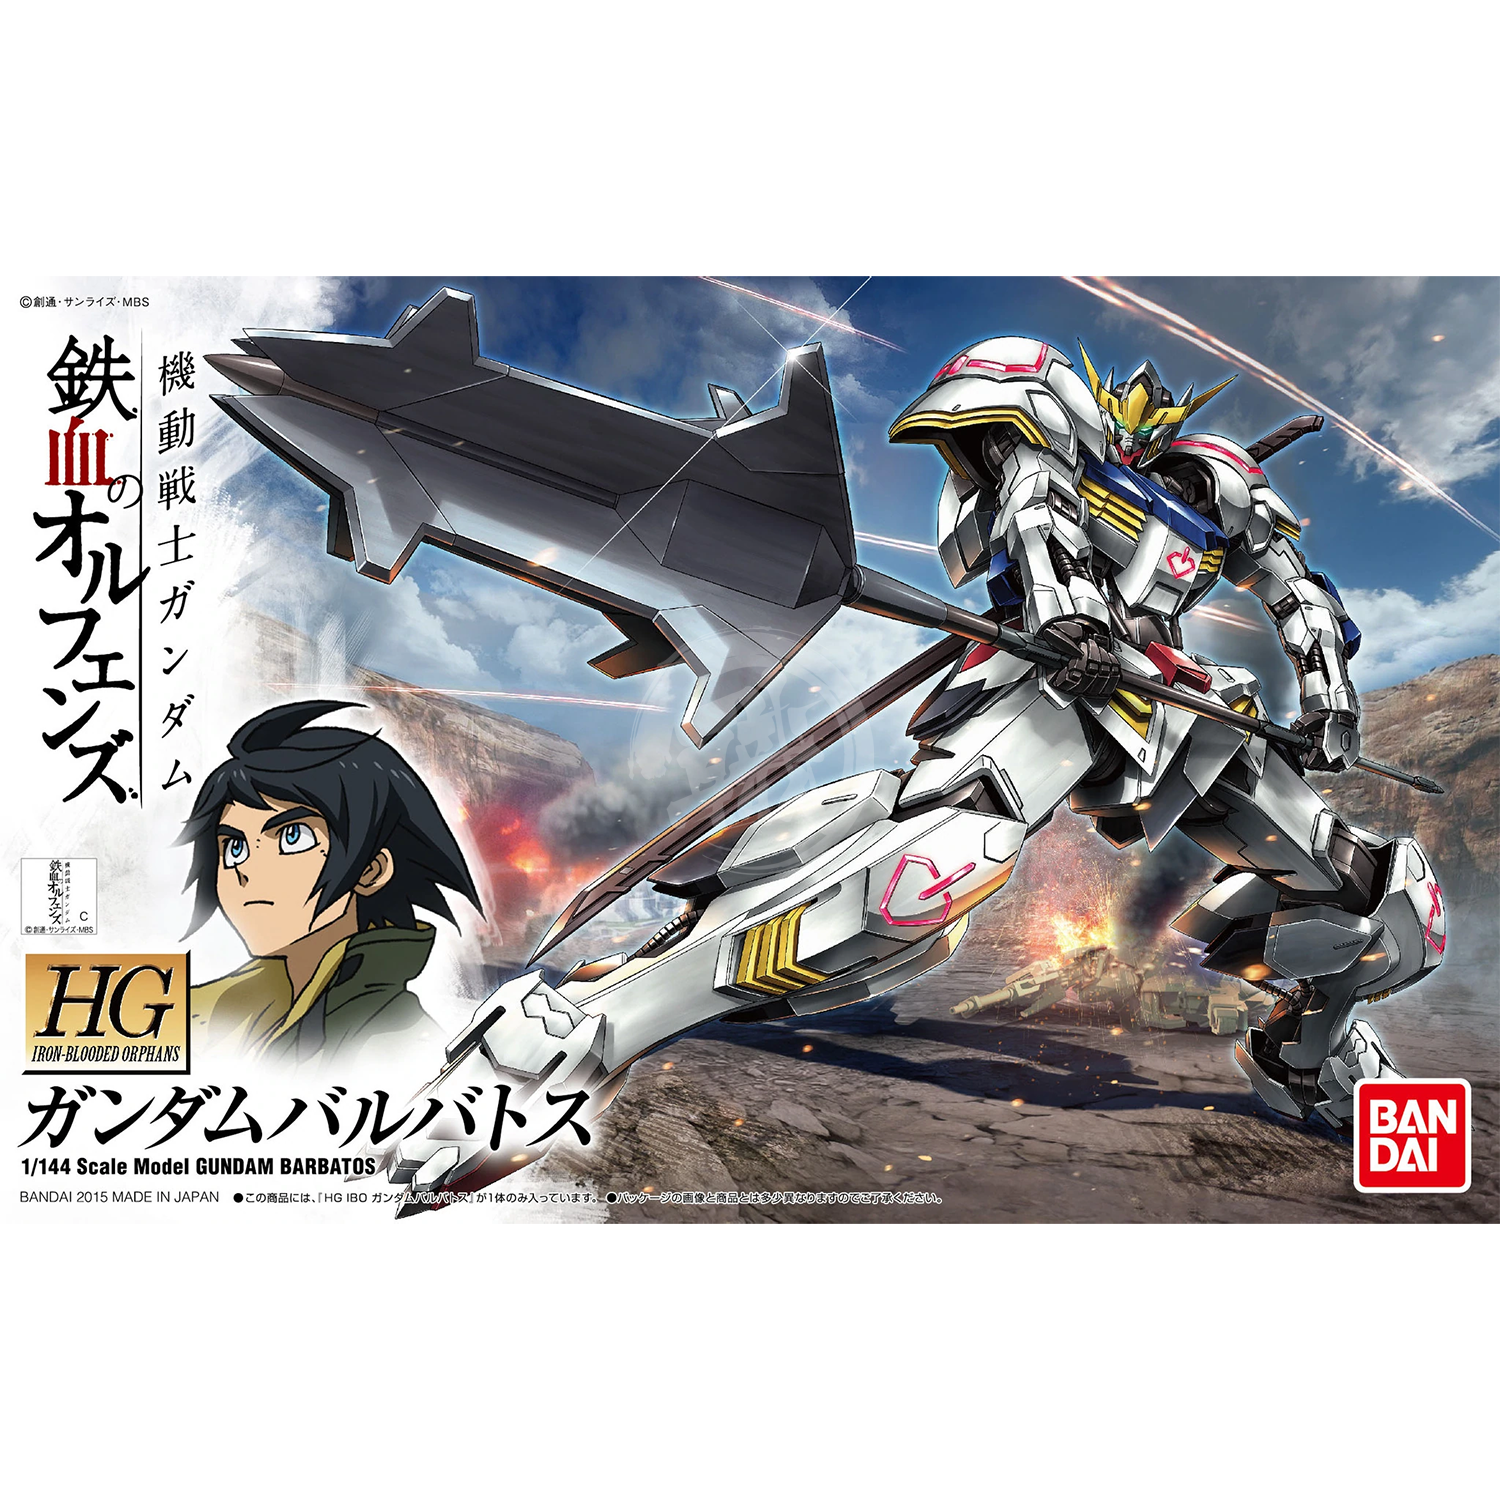 HG Gundam Barbatos - ShokuninGunpla